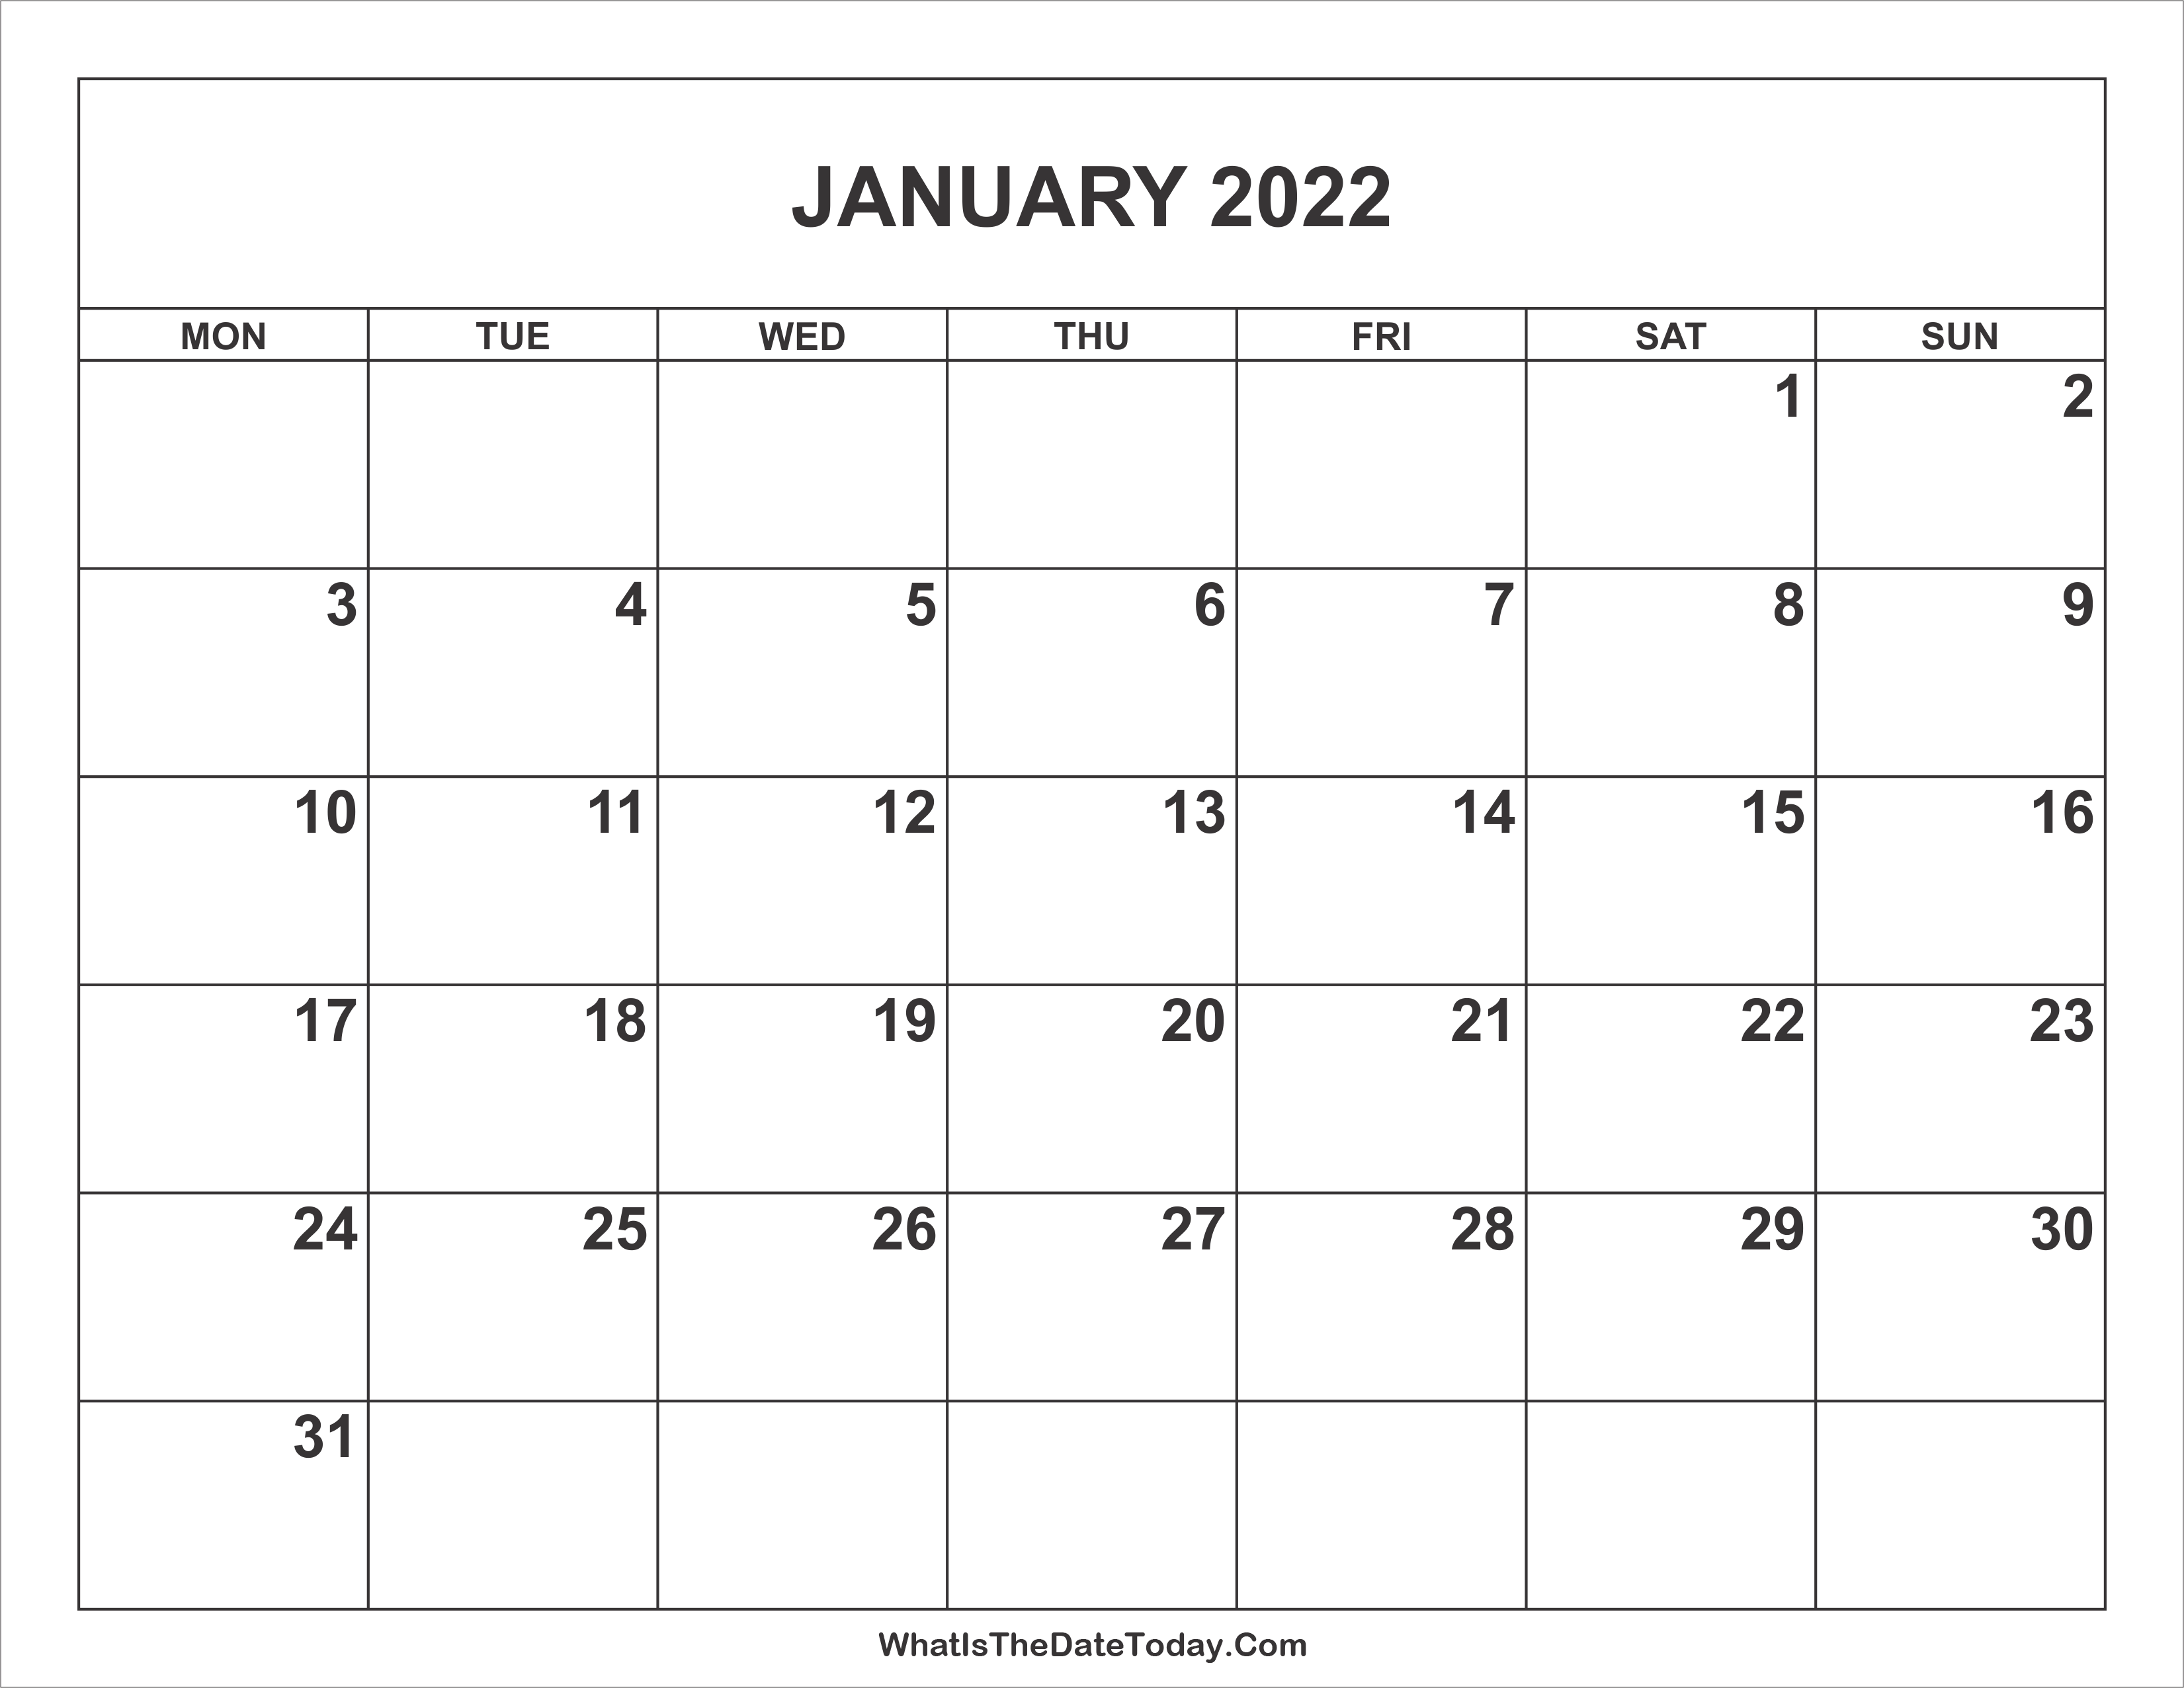 January 2022 Calendar Whatisthedatetoday Com